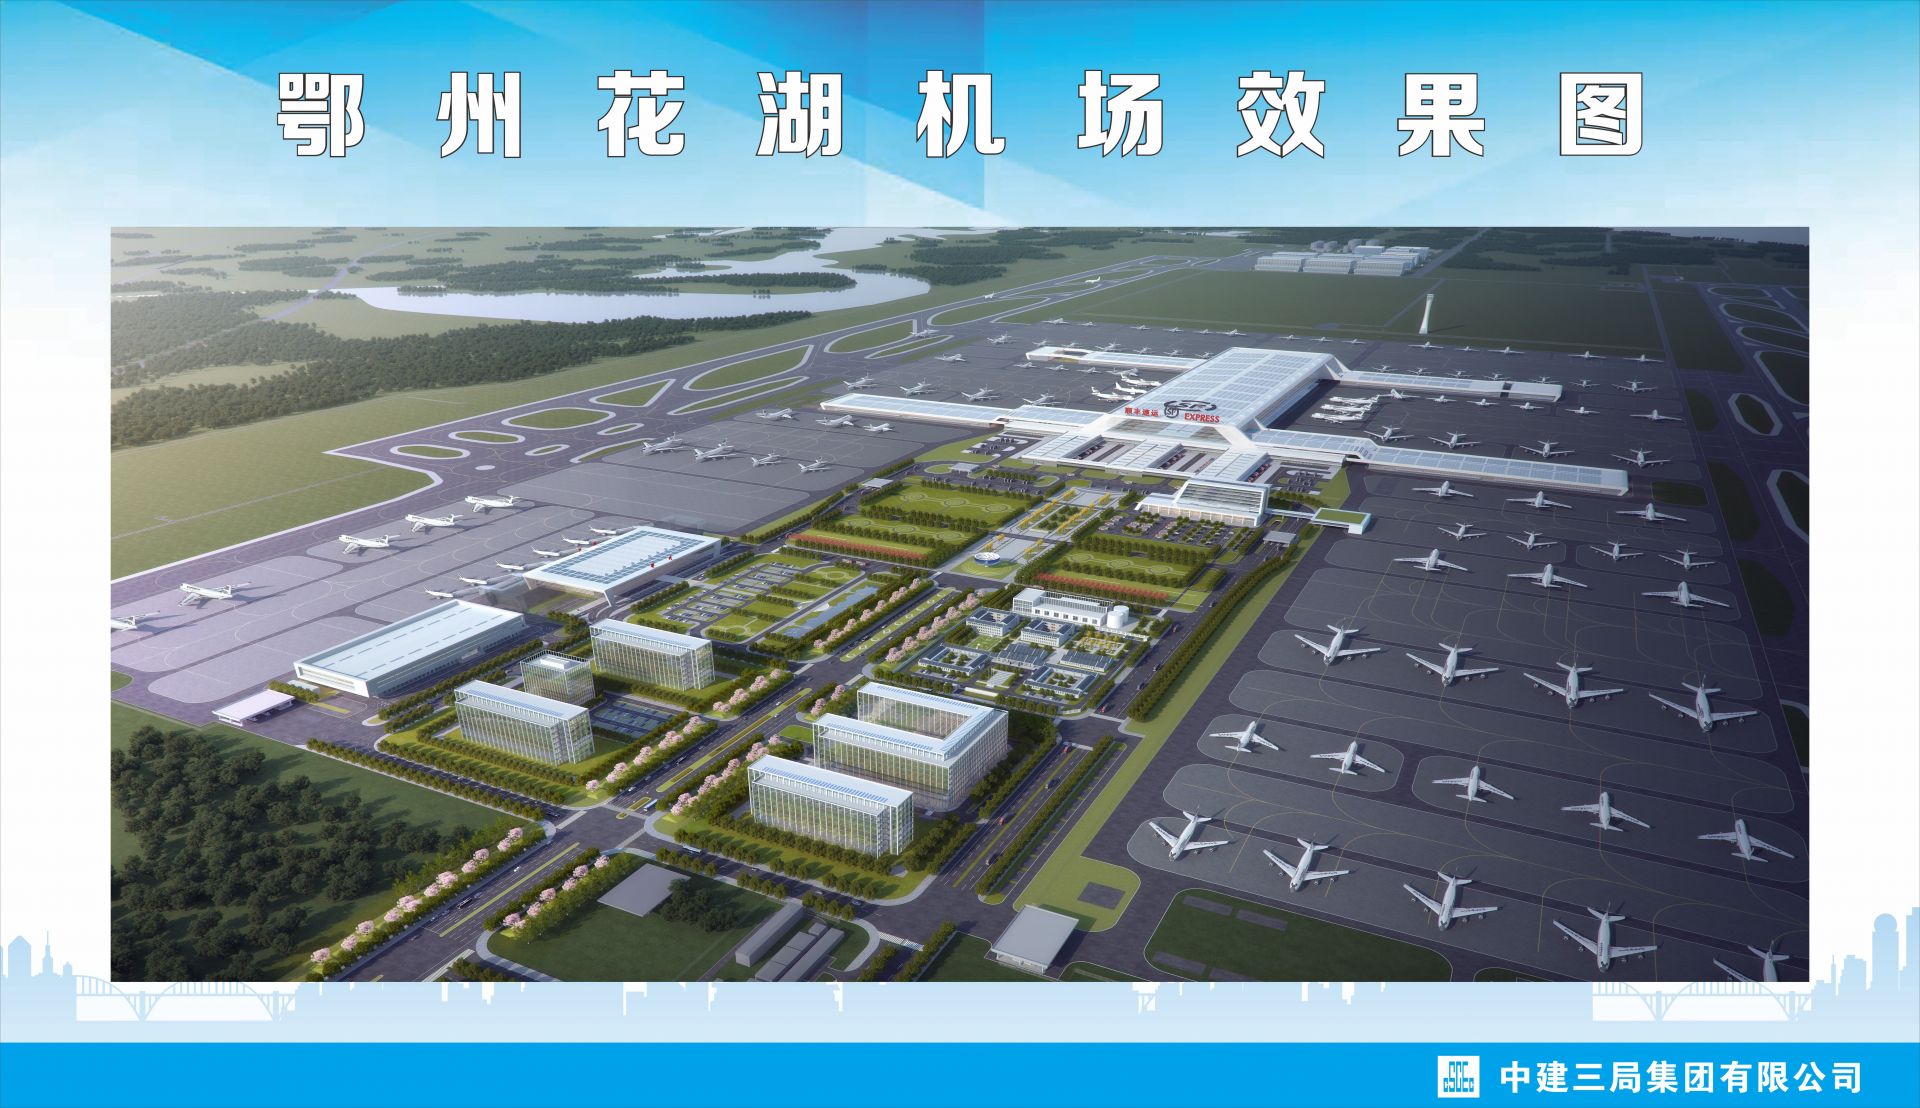 亚洲首个专业货运机场鄂州花湖机场将于明年6月30日建成投用